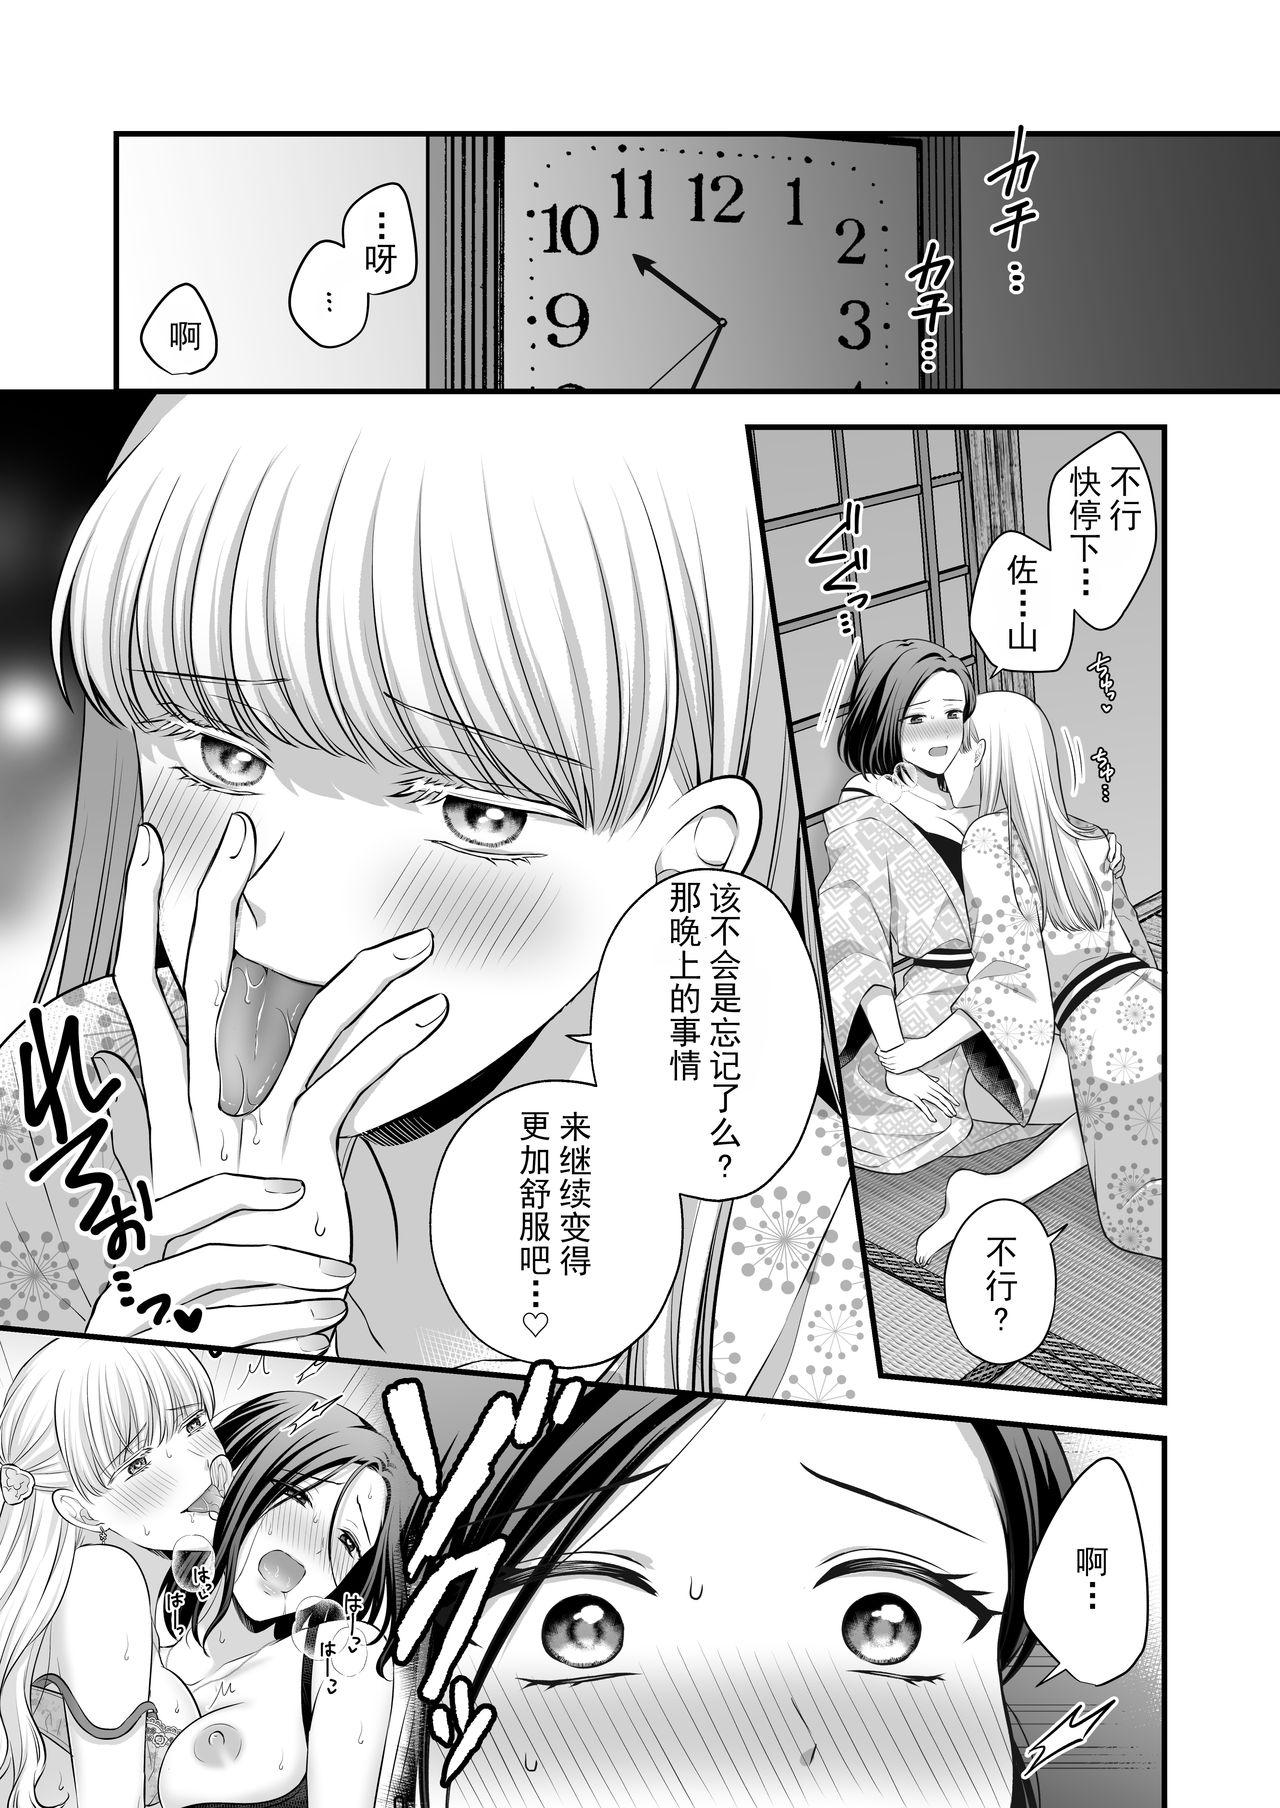 Striptease Aishite Ii no wa, Karada dake 2- Onsen Ryokou no Yoru - Original Stepsis - Page 4